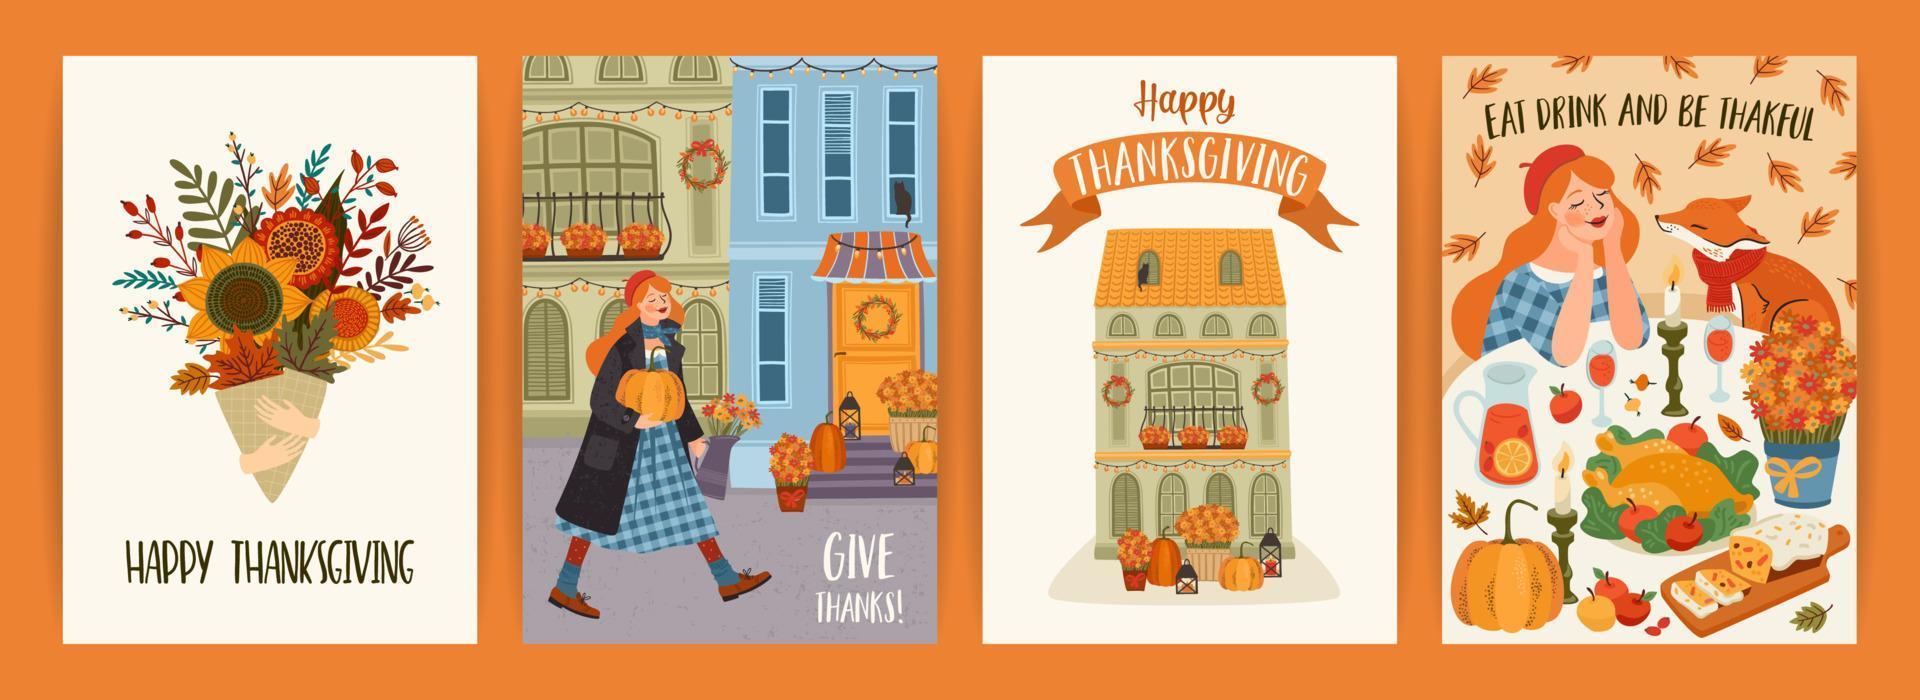 illustrations de joyeux thanksgiving. ensemble de dessins vectoriels pour cartes, affiches, dépliants, web et autres utilisations vecteur